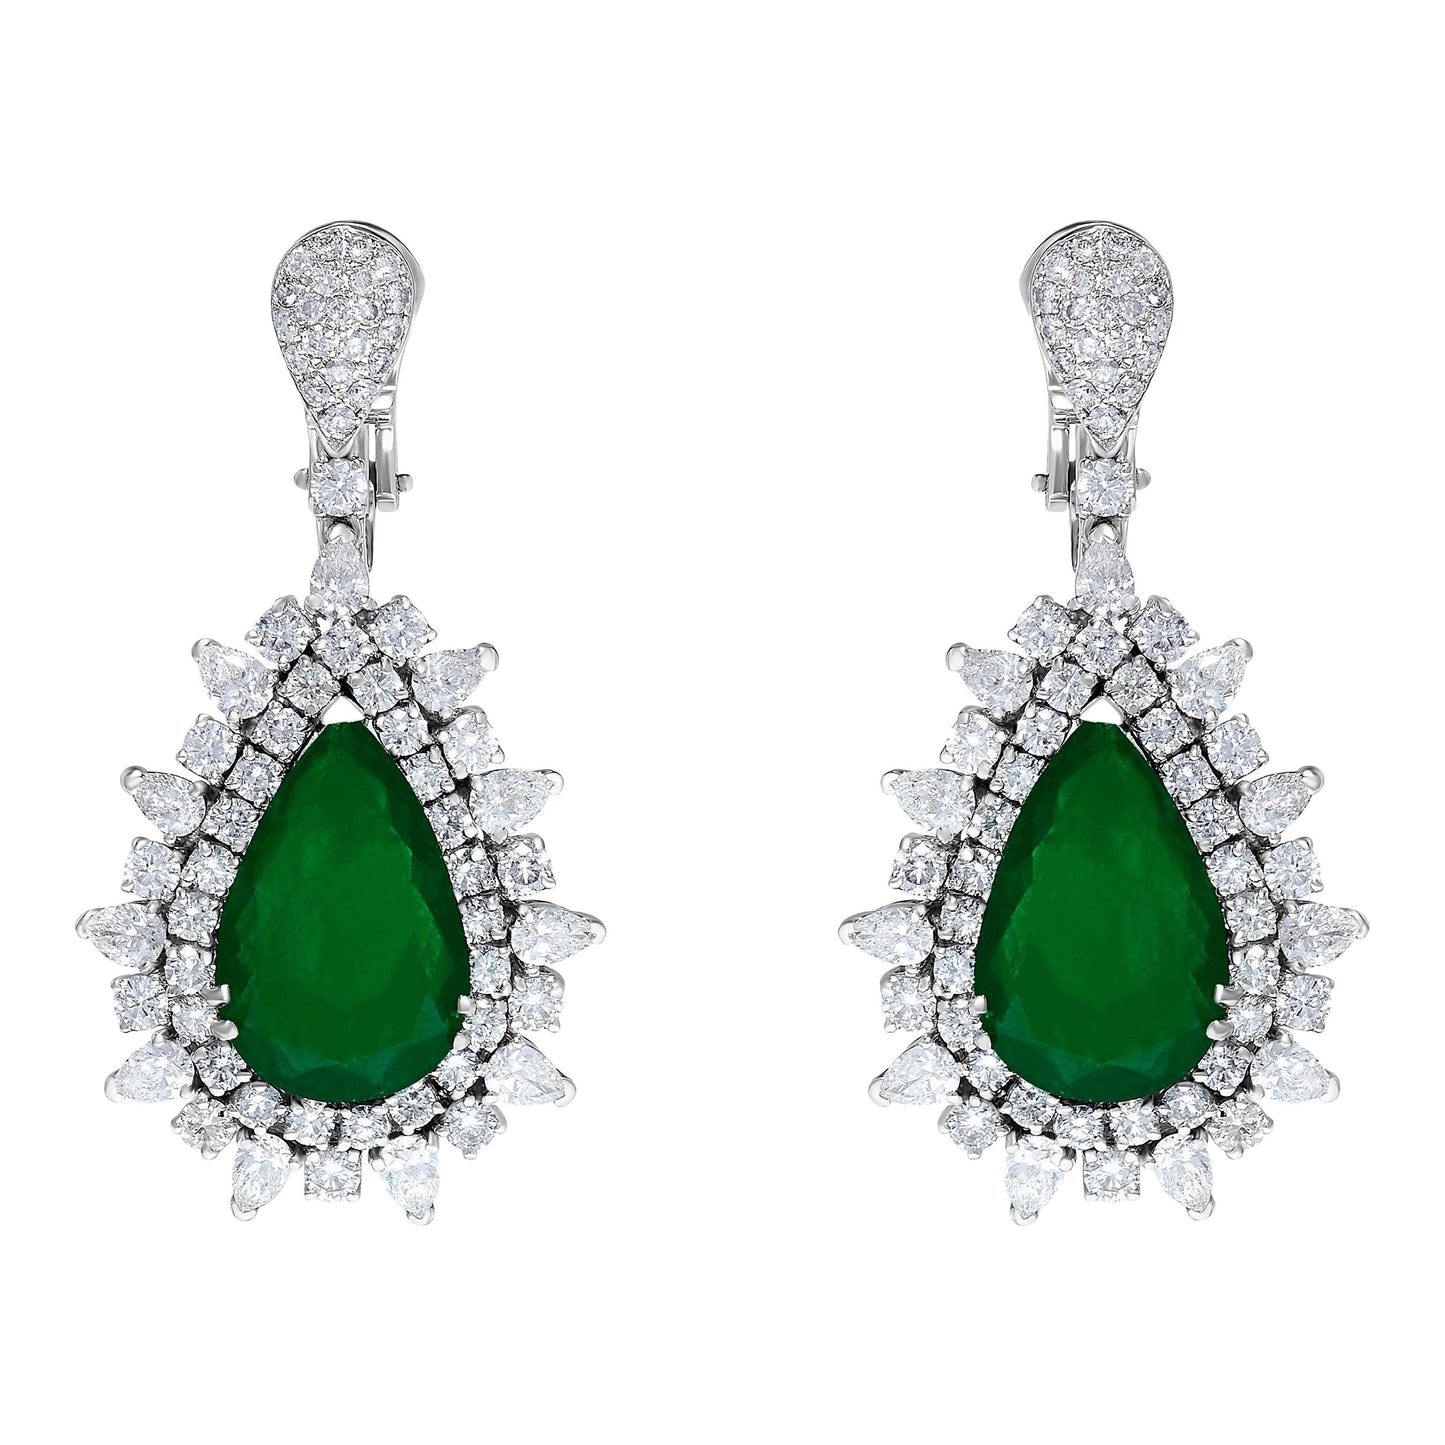 Emilio Jewelry Certified 17.00 Carat Colombian Muzo Vivid Green Emerald Earrings